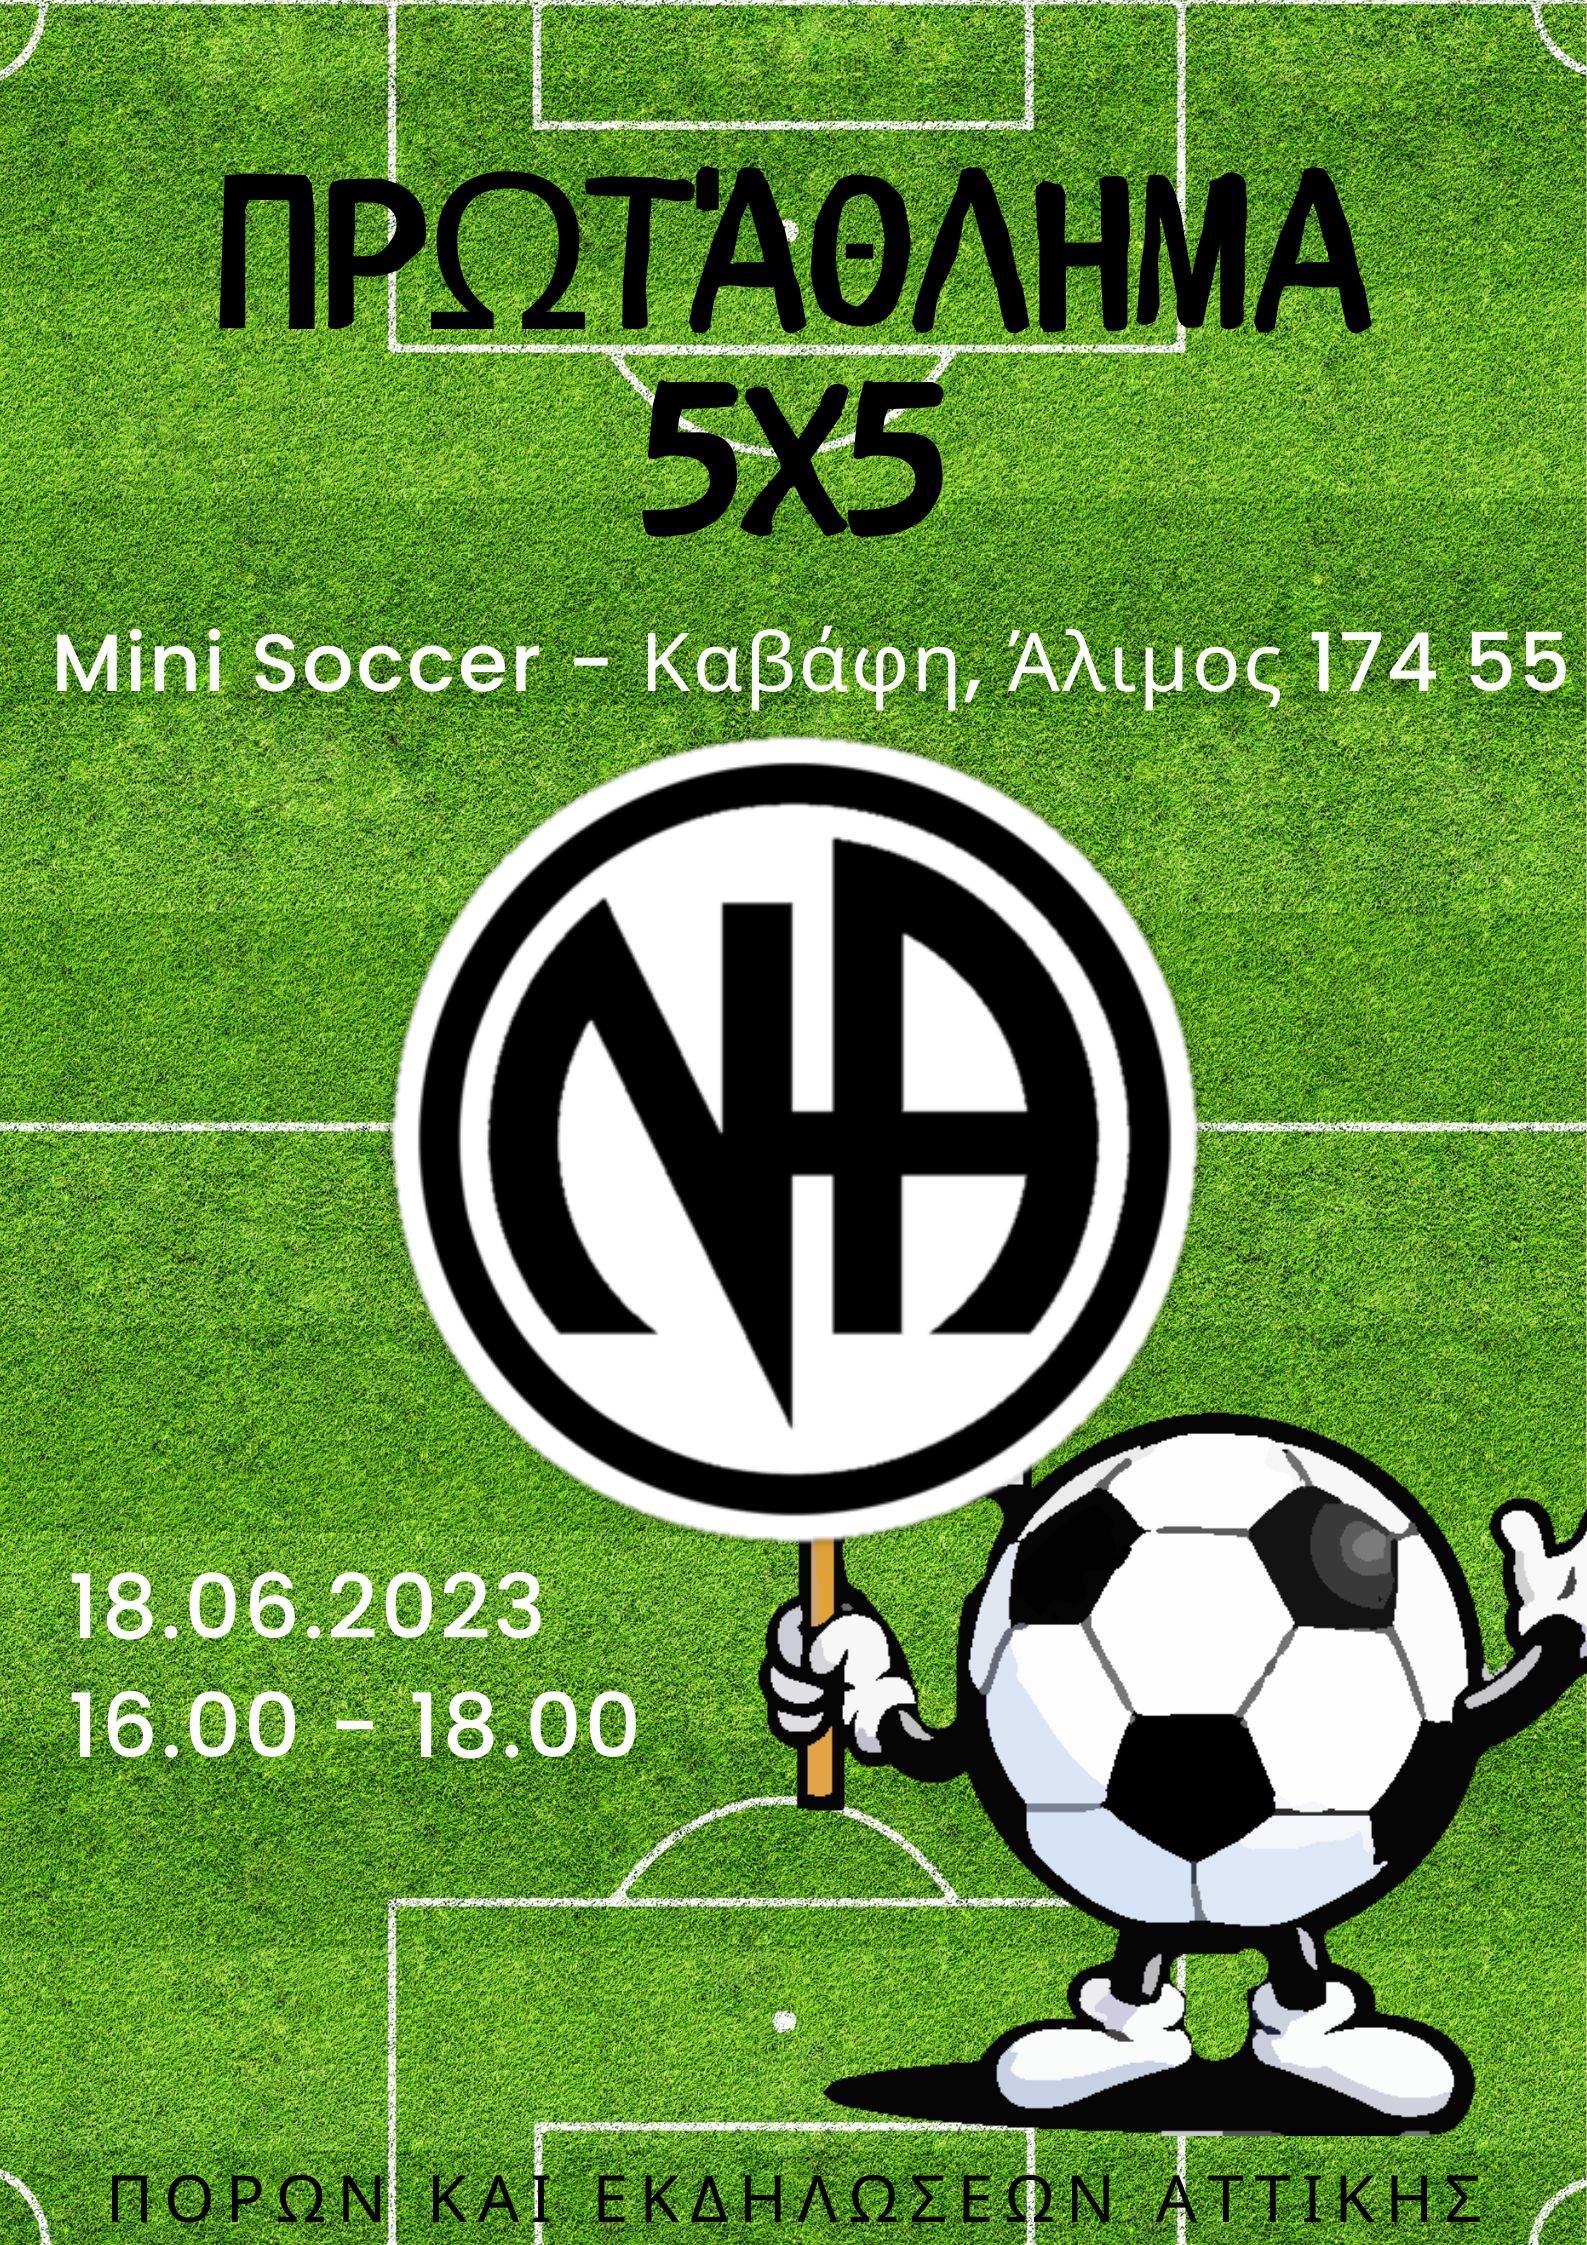 Πρωτάθλημα 5x5 Mini Soccer Ναρκομανών Ανωνύμων